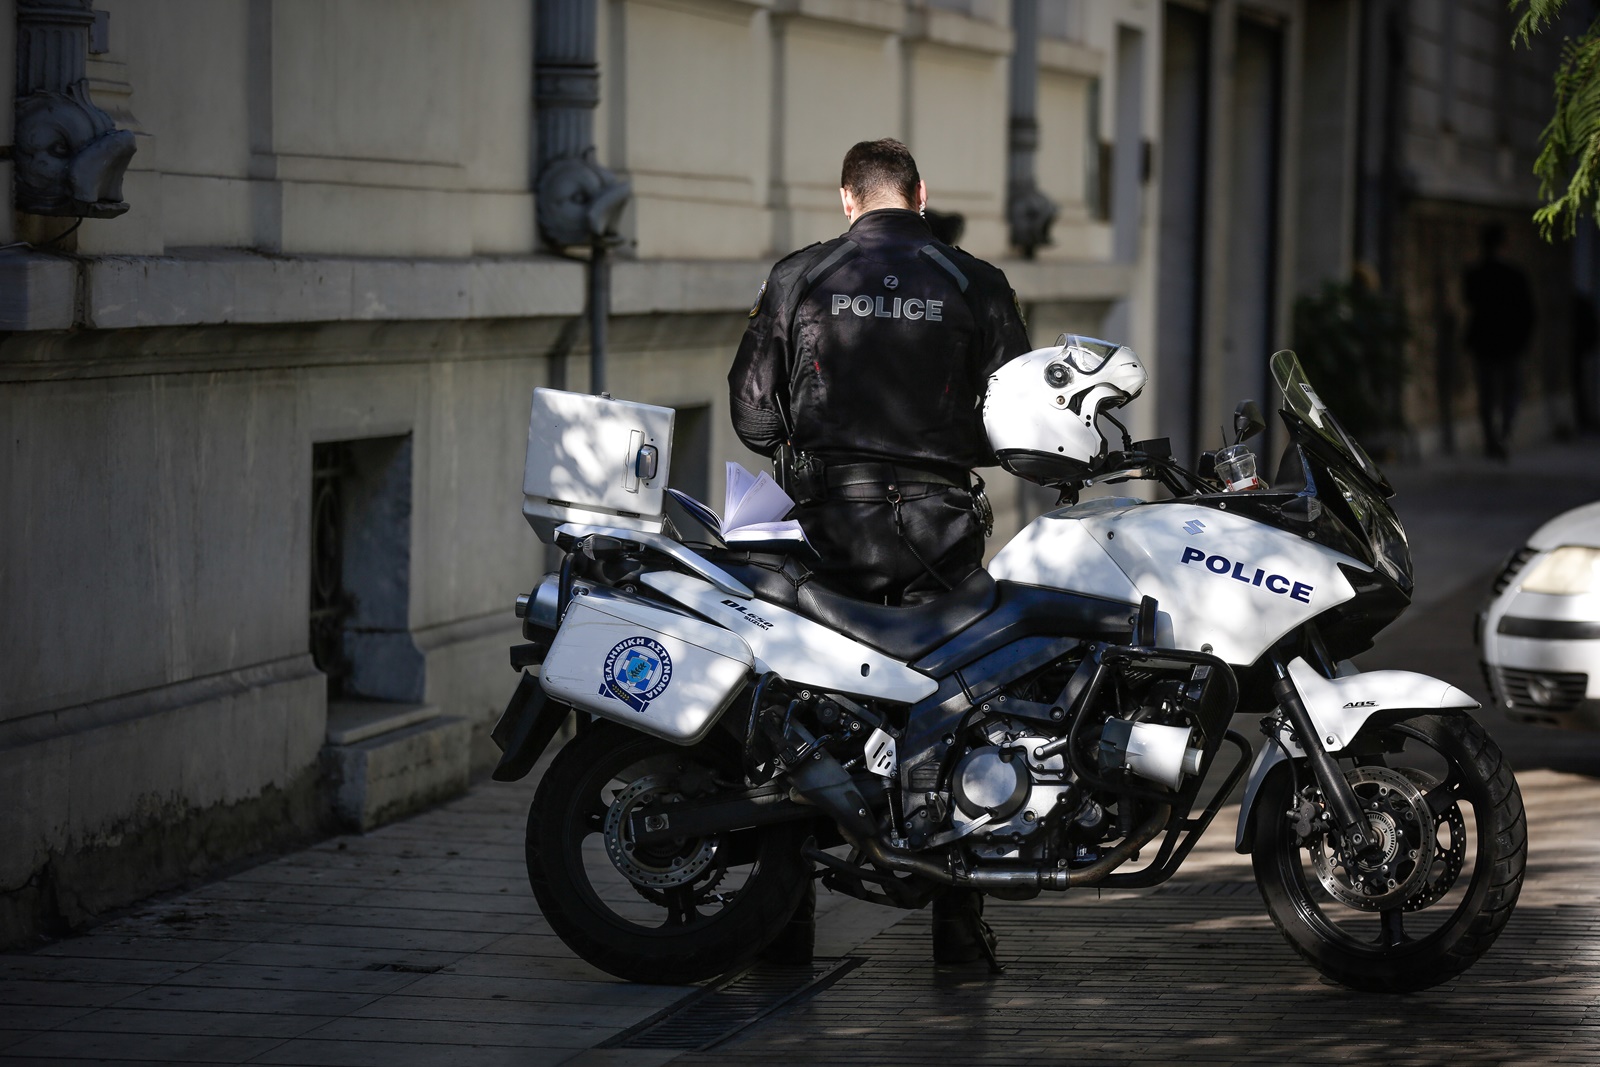 Ξυλοδαρμός 15χρονου από αστυνομικό: Καταγγελία σοκ στη Θεσσαλονίκη